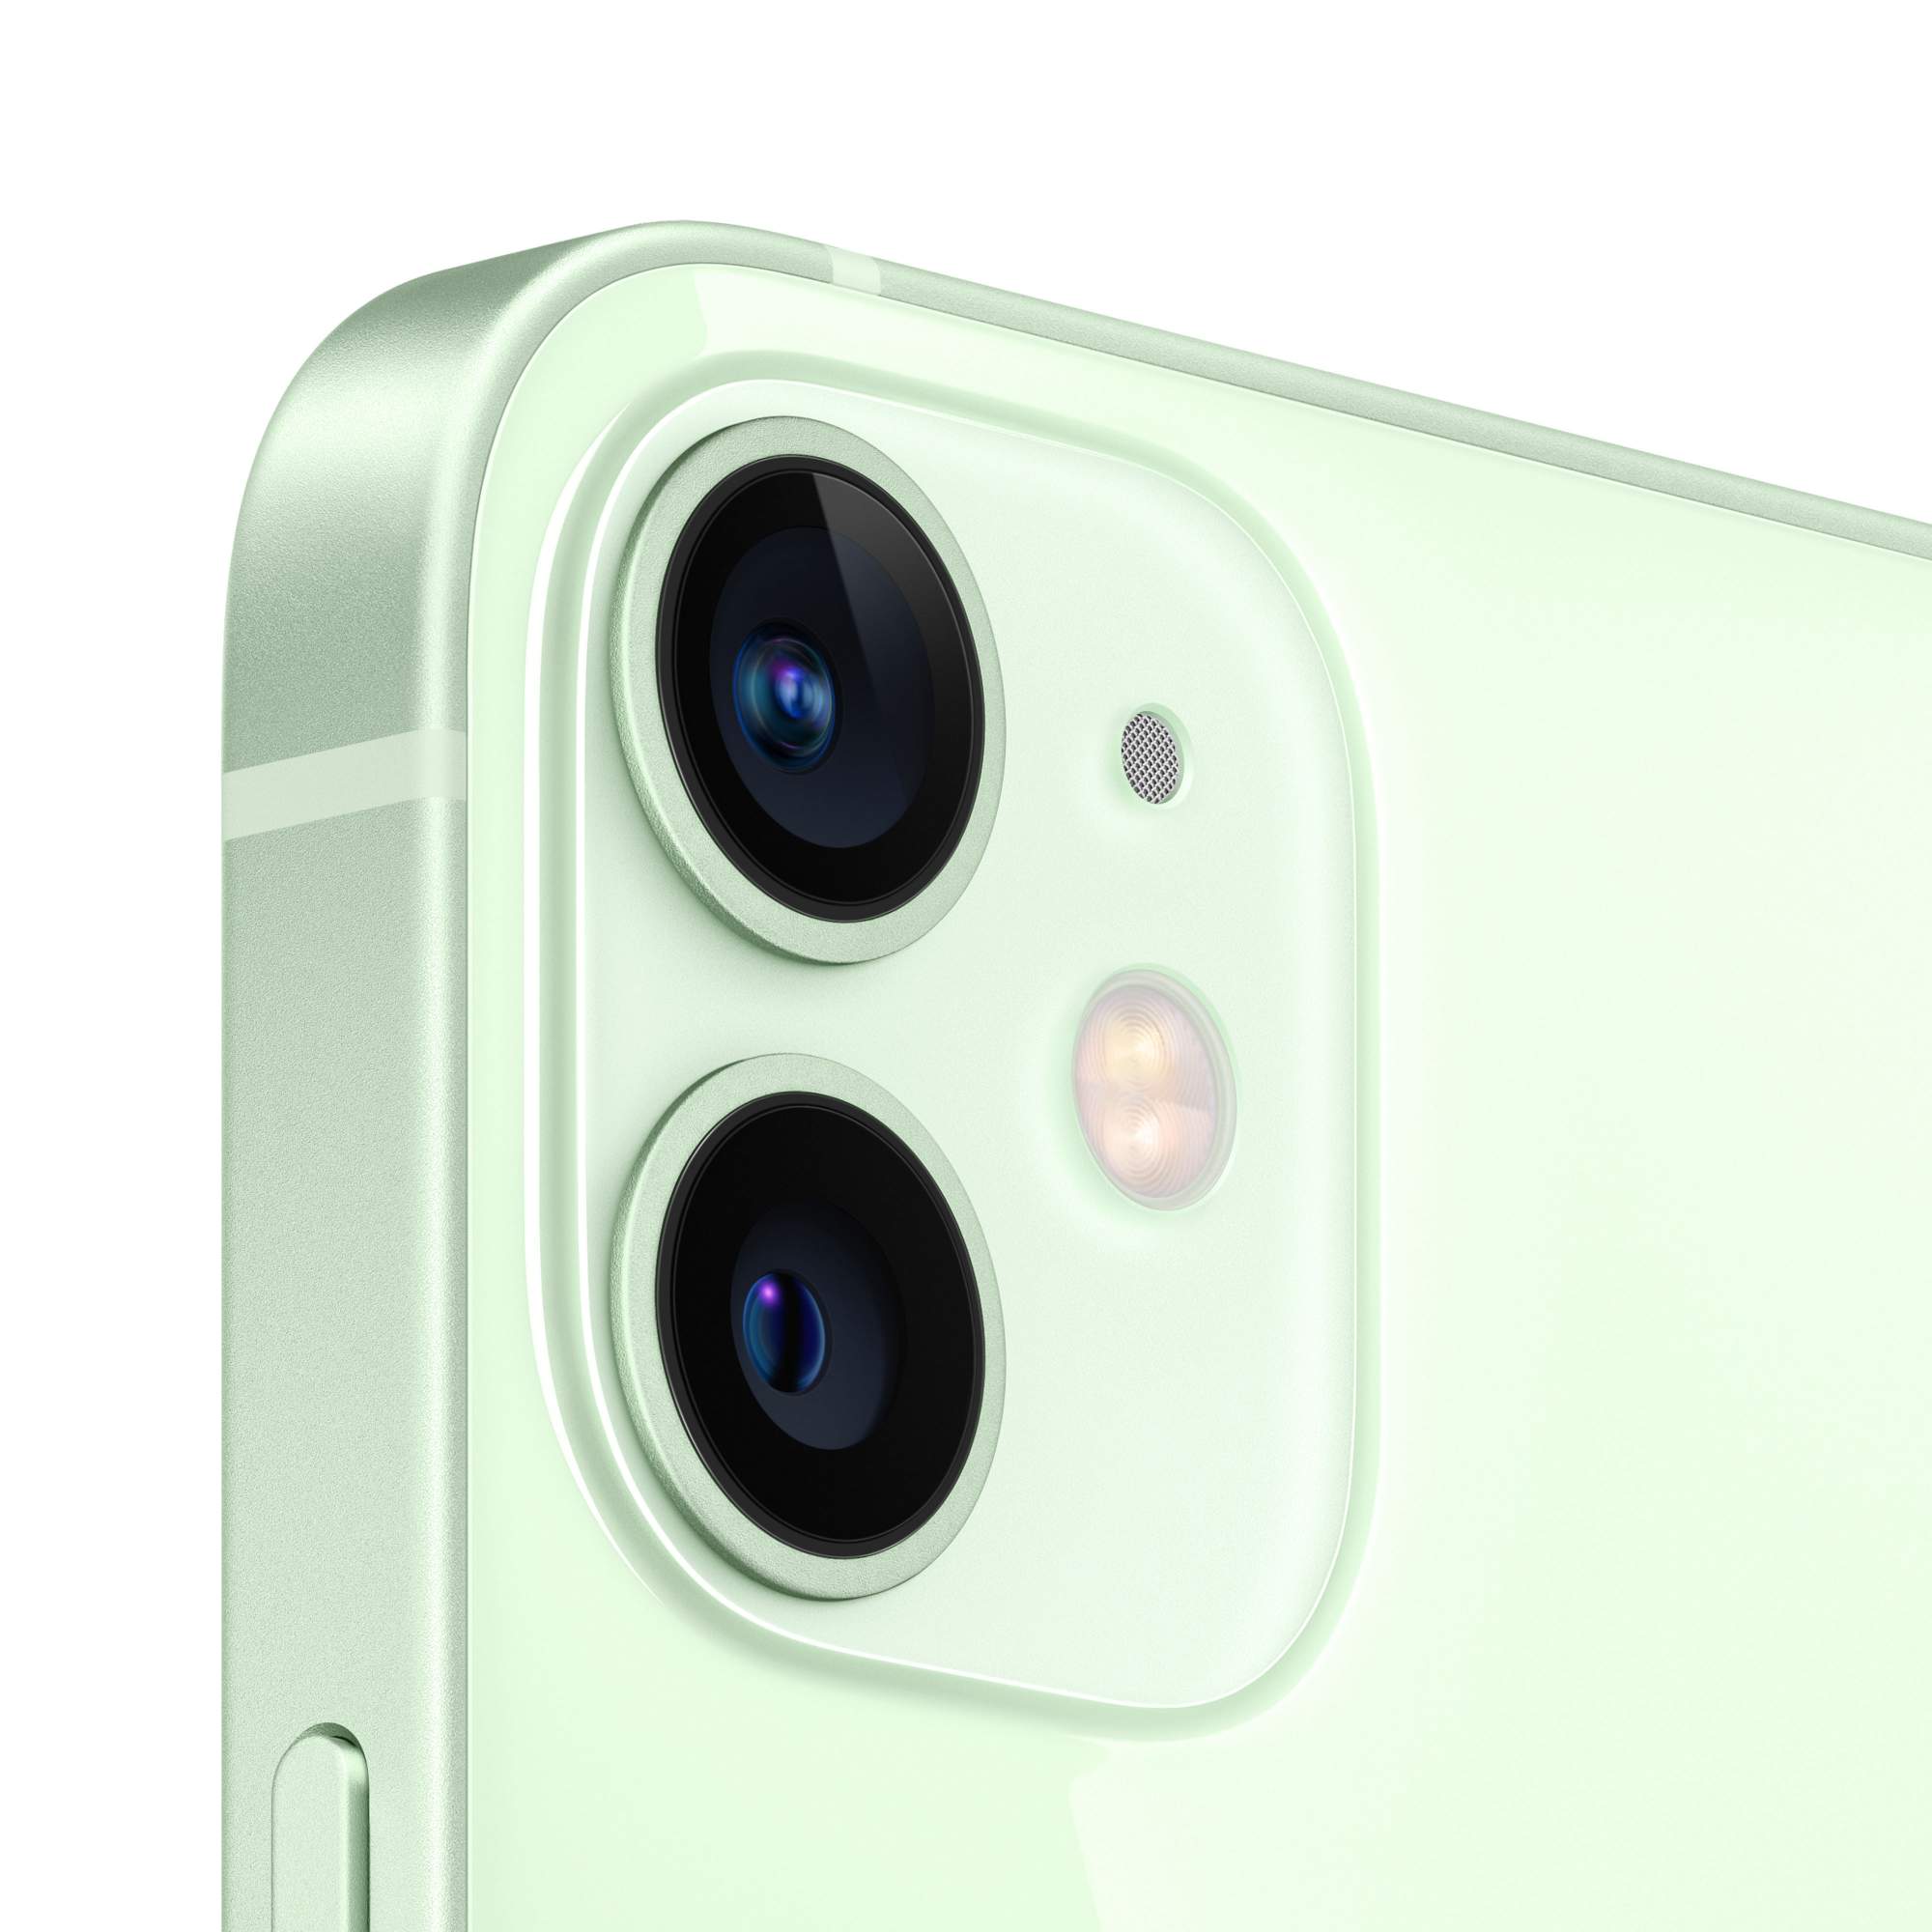 Смартфон Apple iPhone 12 mini 64GB Green (MGE23RU/A) - отзывы покупателей  на маркетплейсе Мегамаркет | Артикул: 100027415736